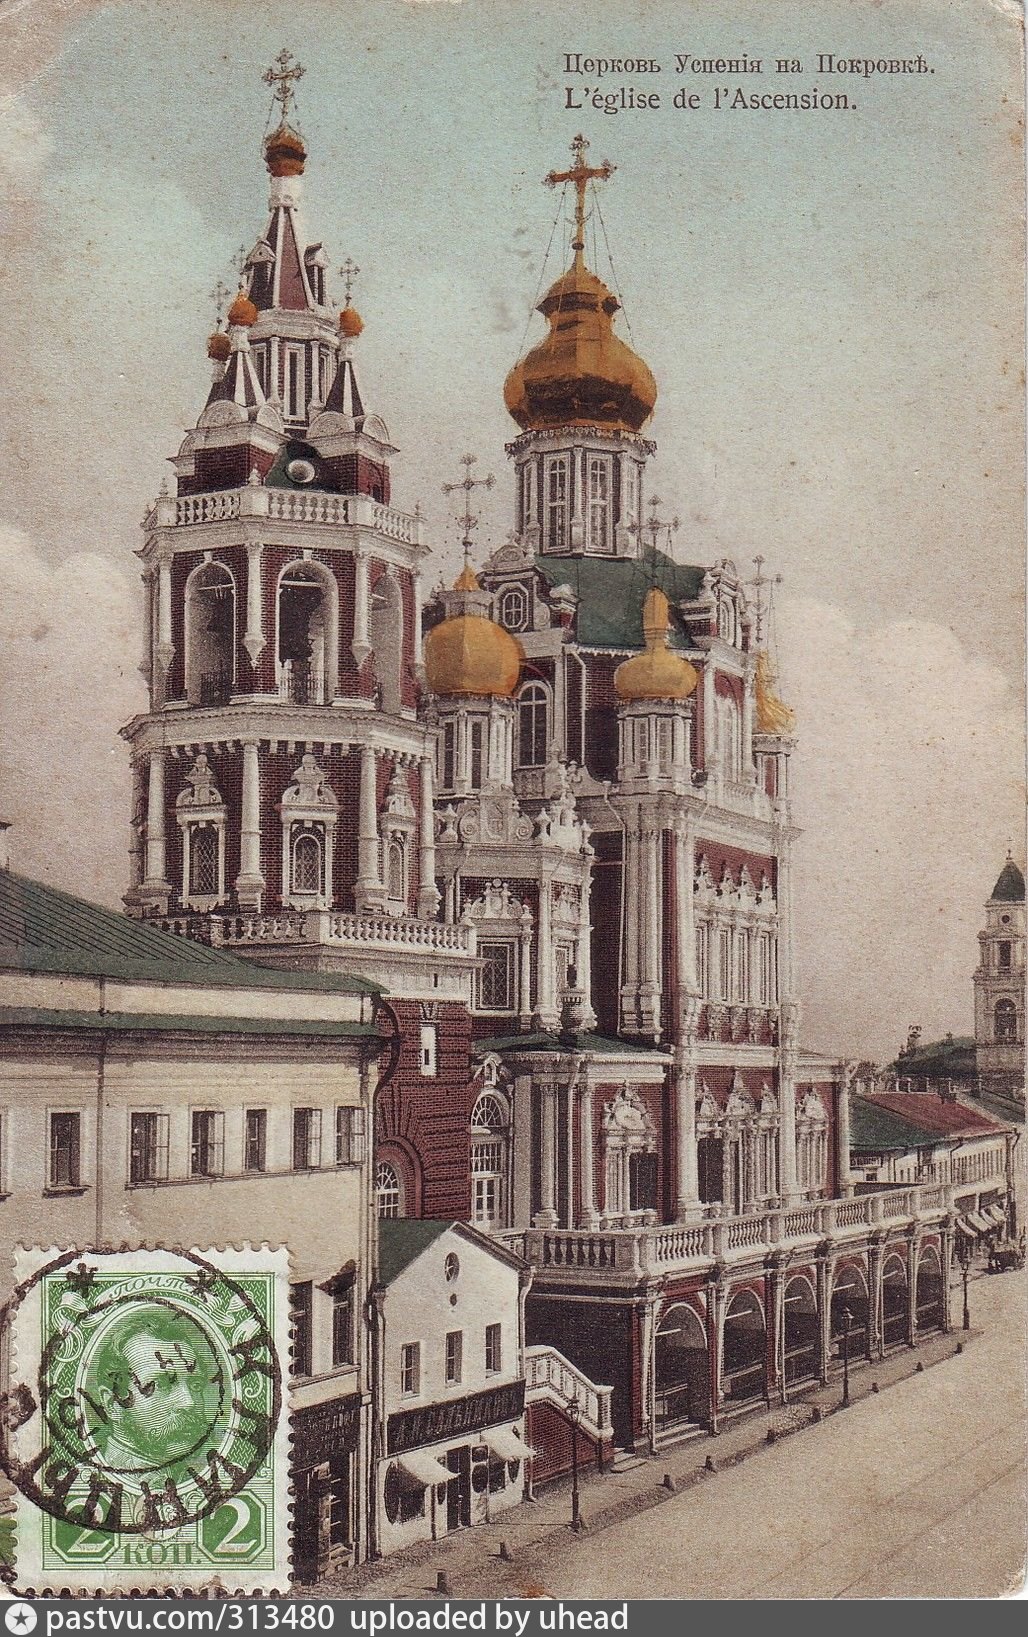 Храм успения на покровке в москве